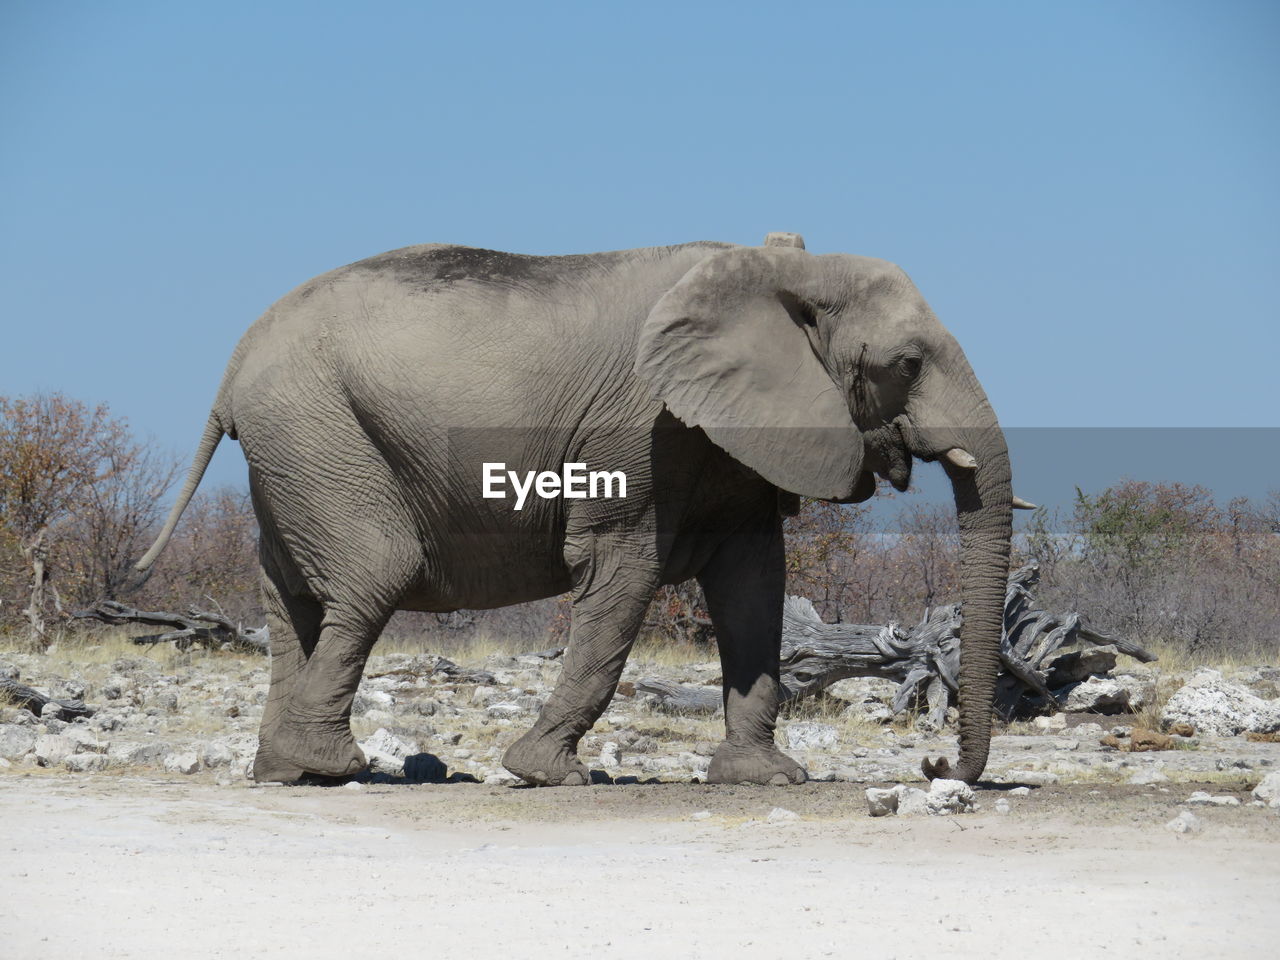 VIEW OF ELEPHANT WALKING ON FIELD